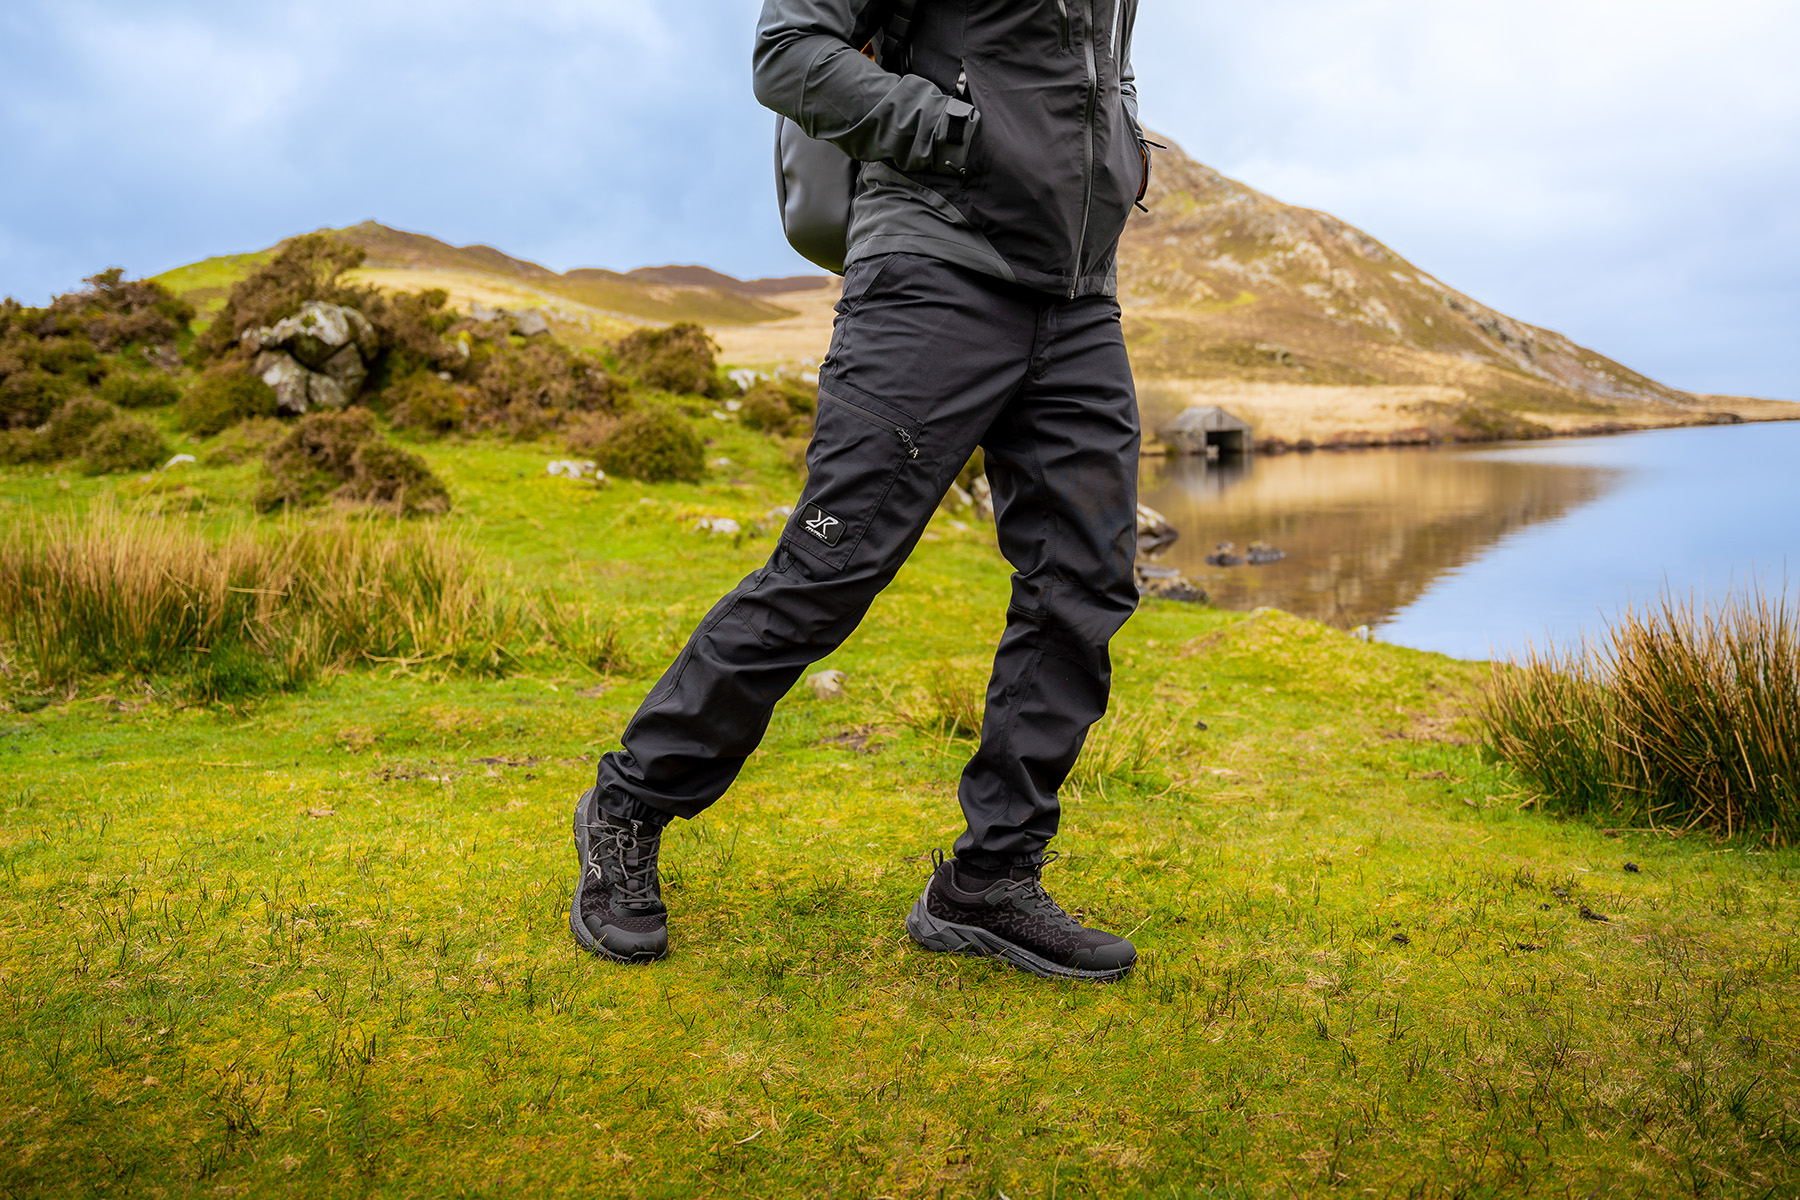  Men's Outdoor Recreation Hiking Pants - Quick Dry